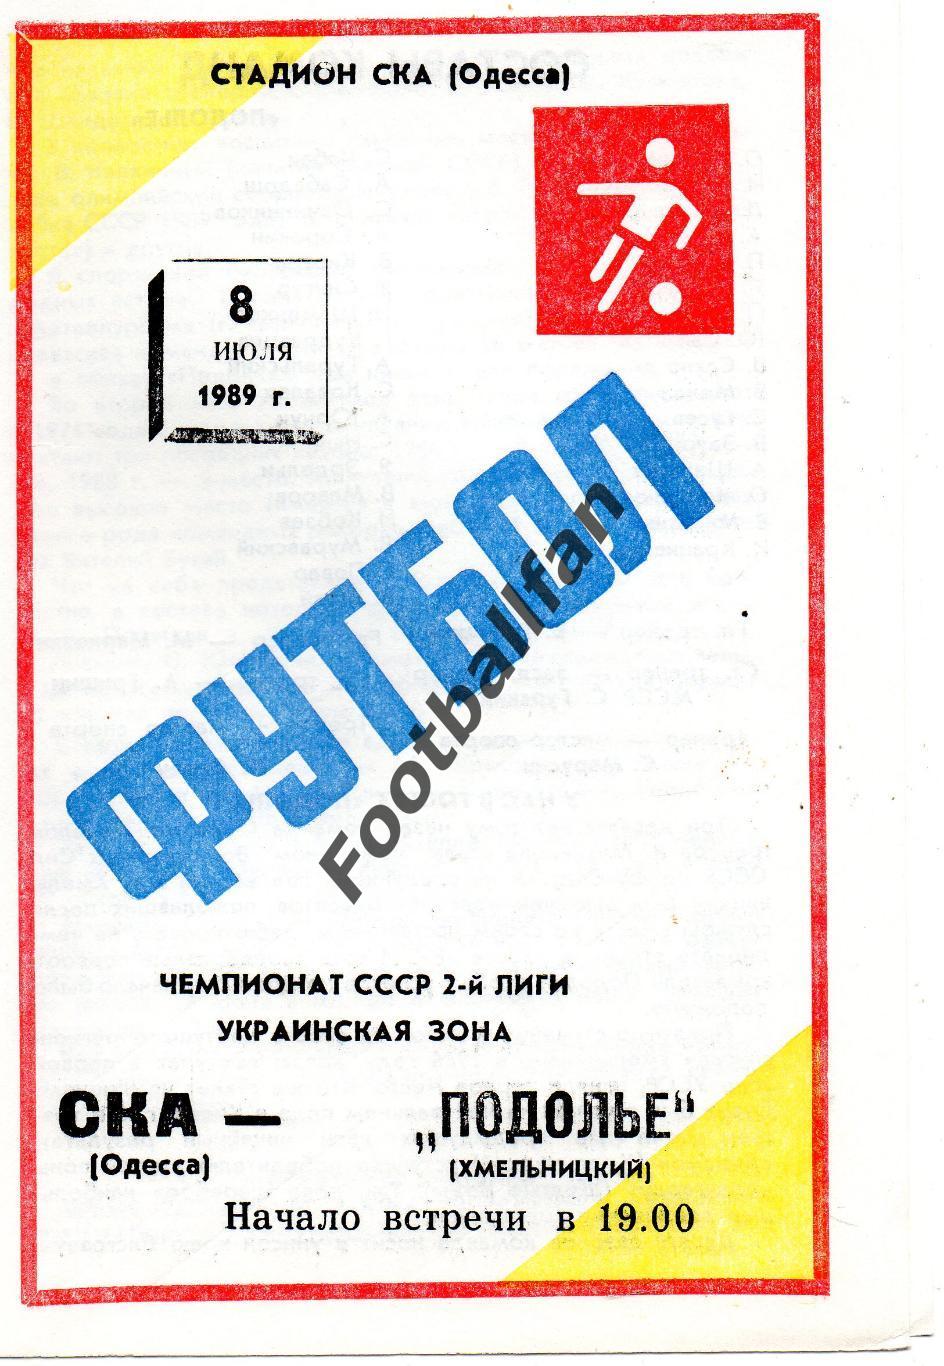 СКА Одесса - Подолье Хмельницкий 08.07.1989